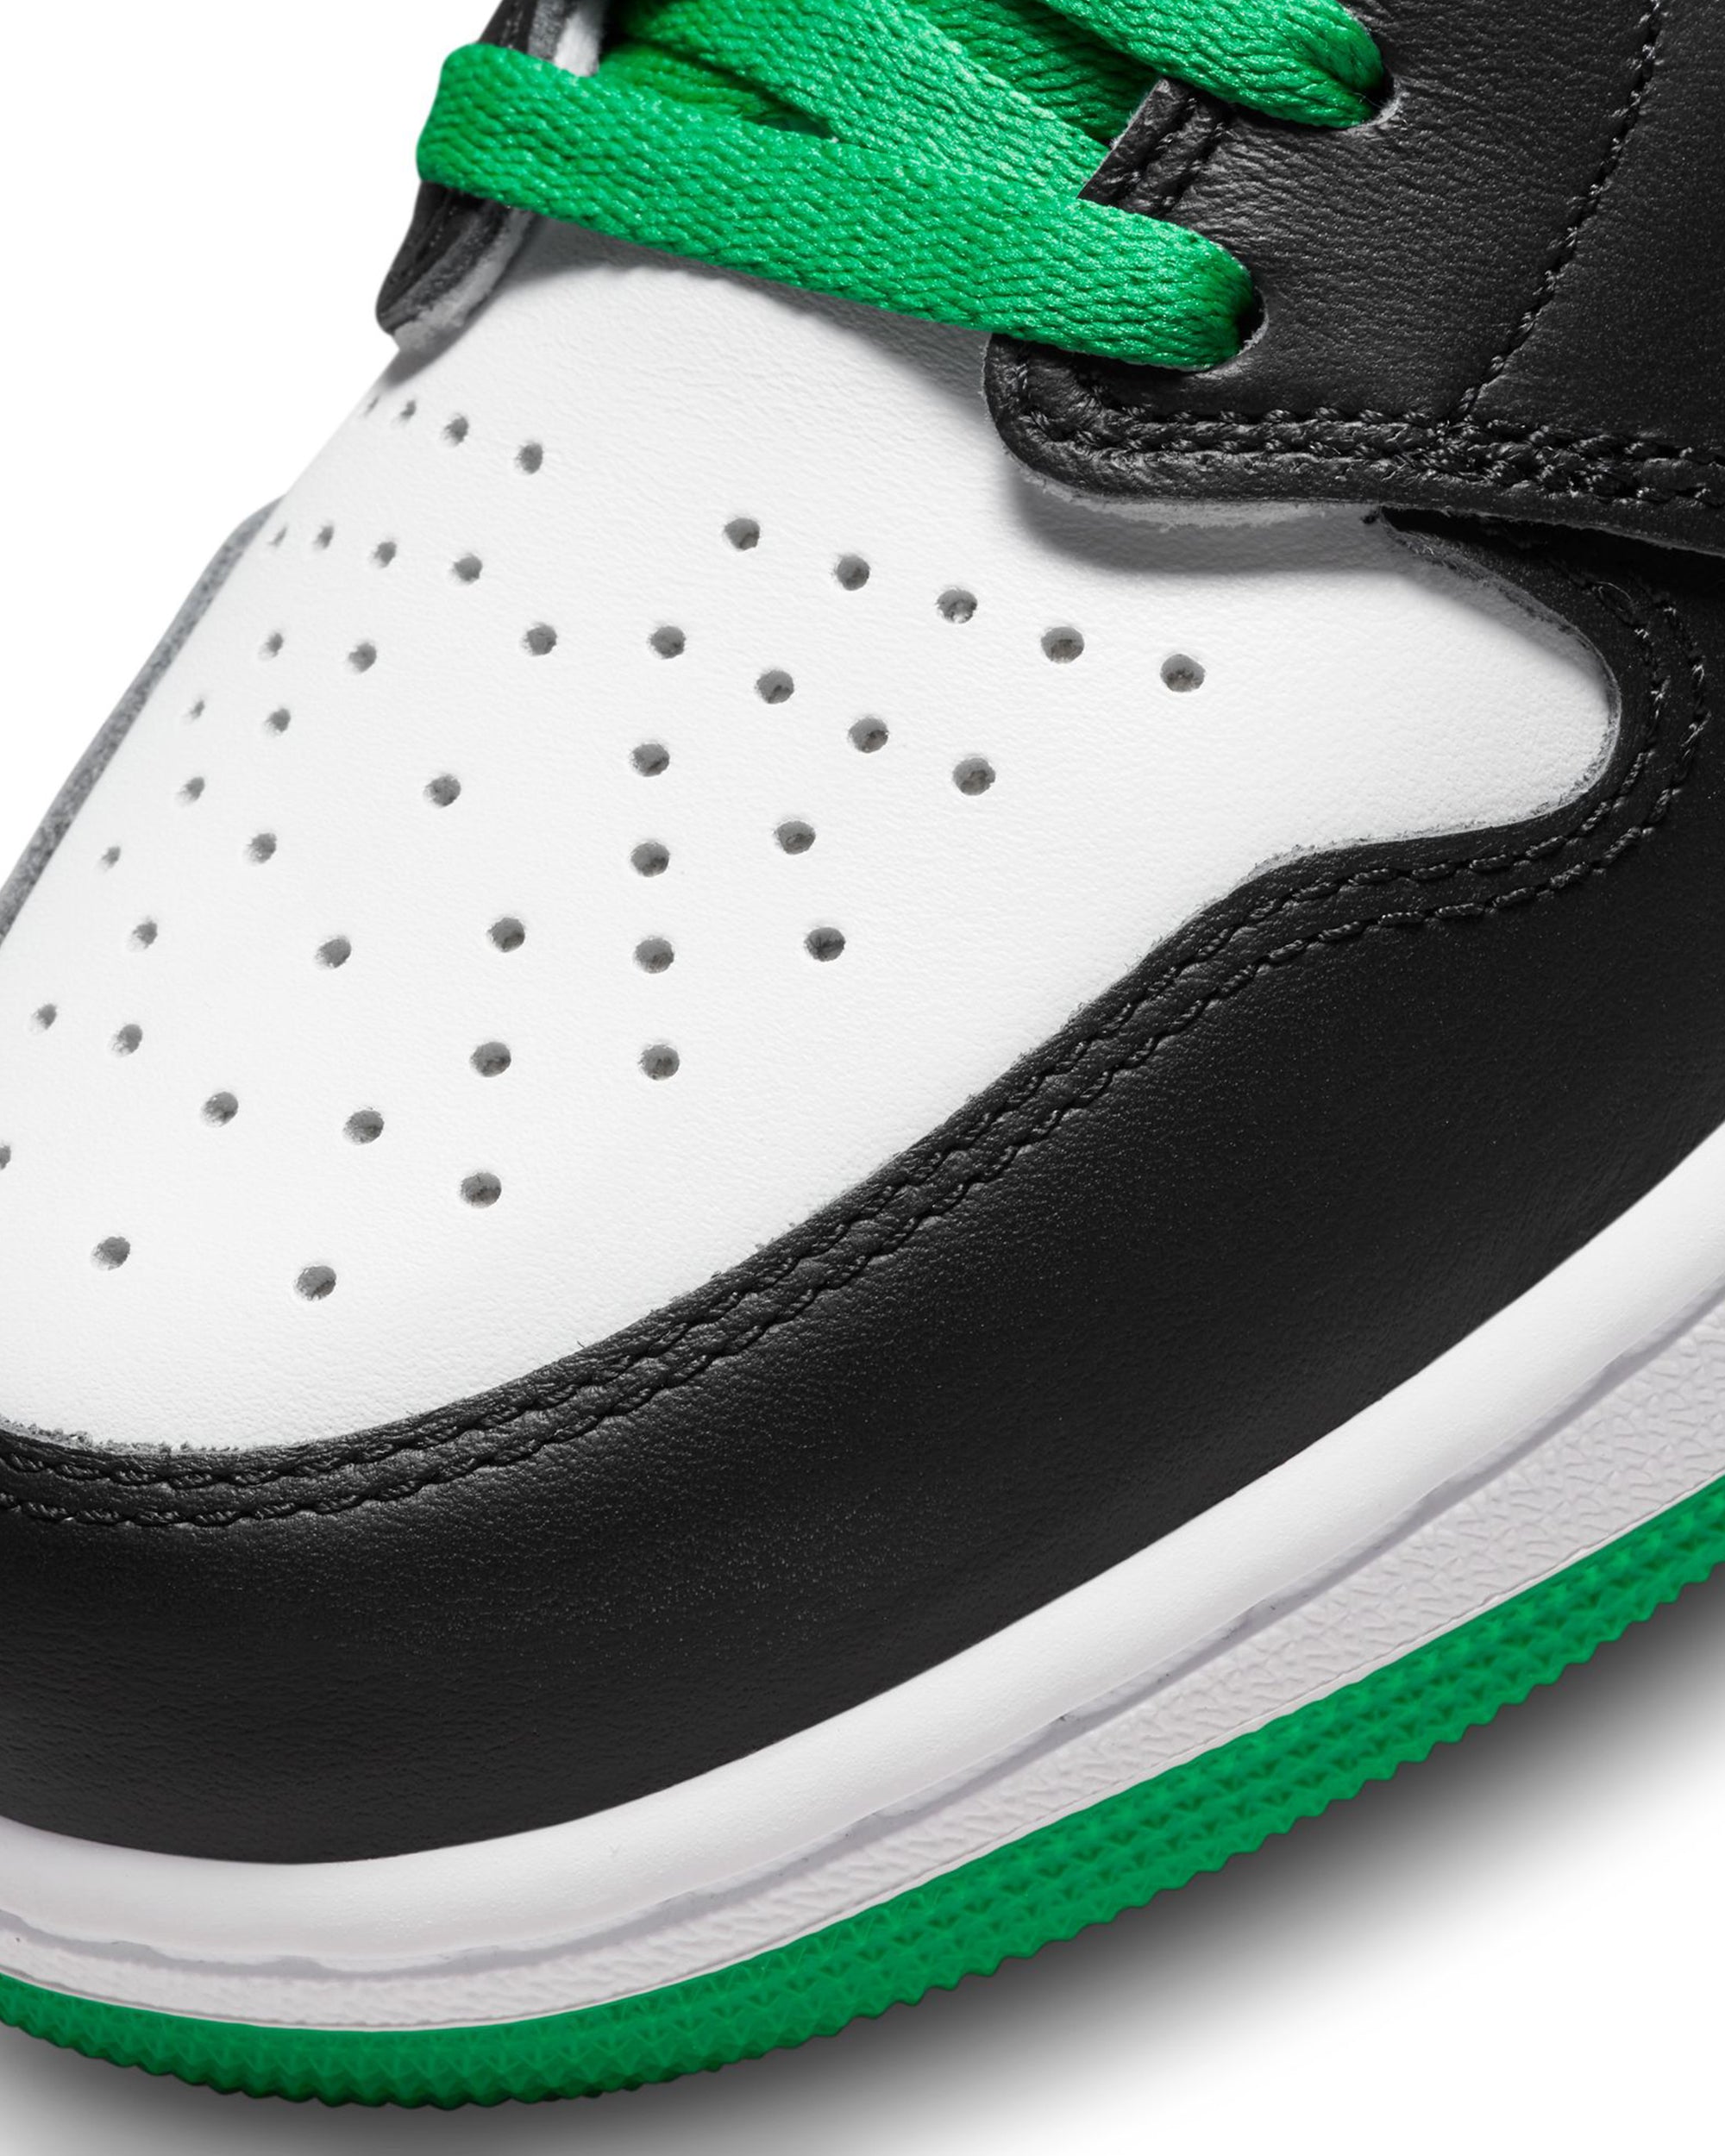 Air Jordan 1 Retro High OG - Black / Lucky Green / White